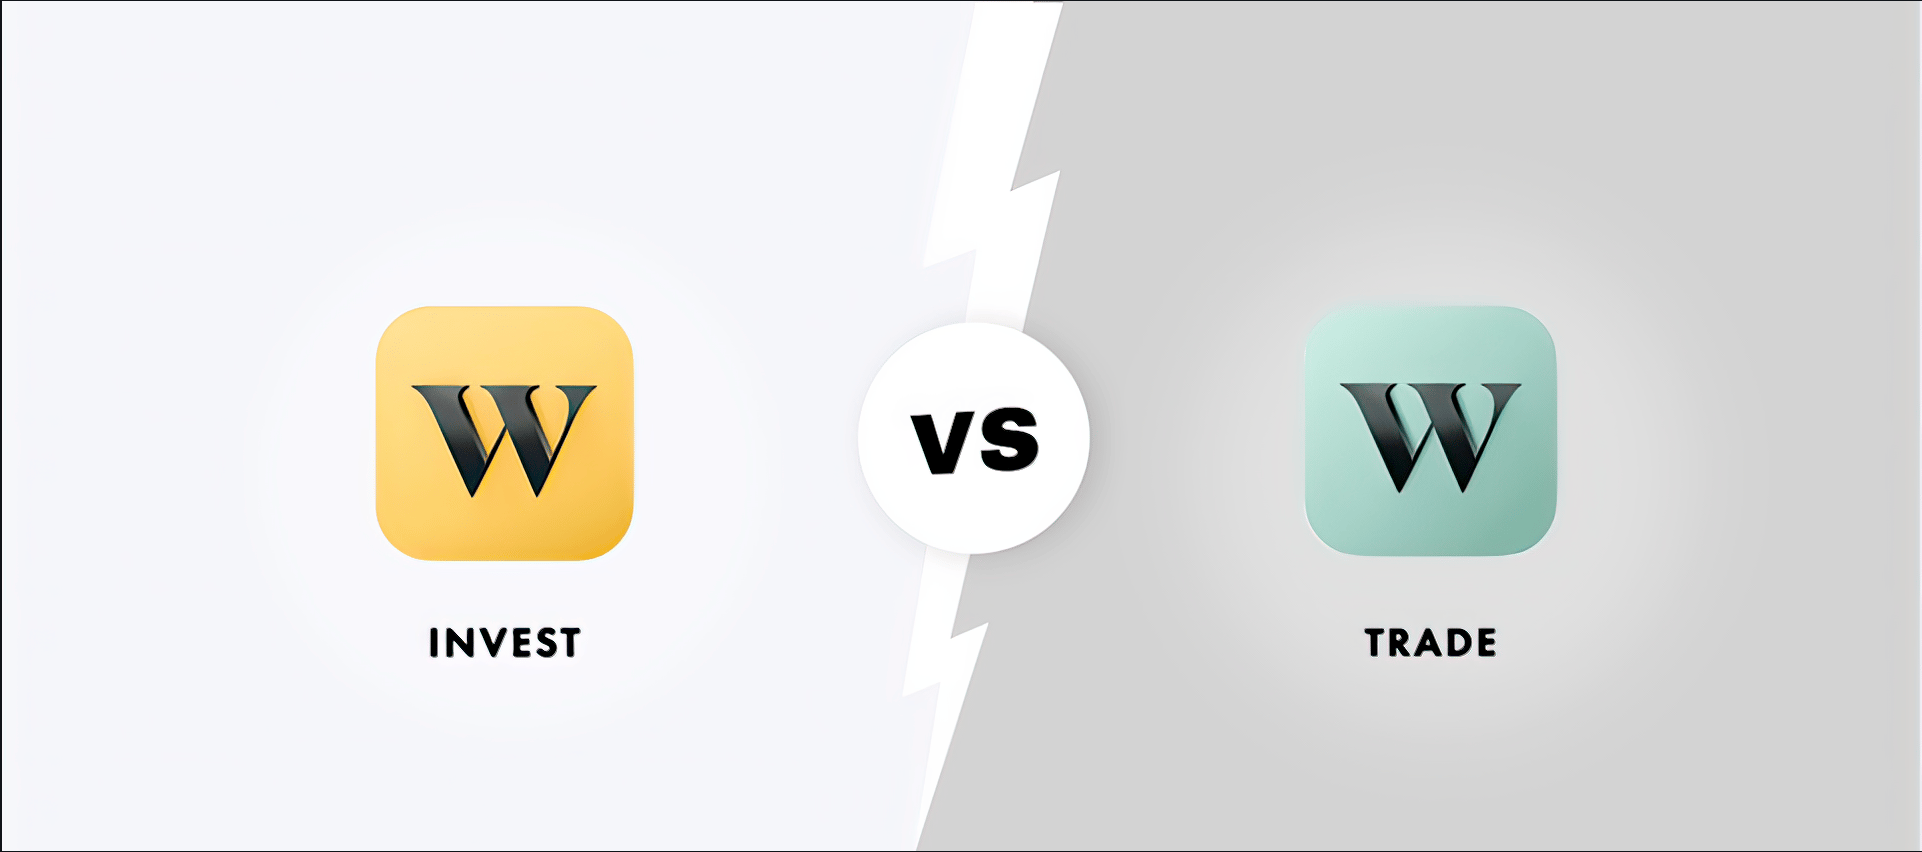 Wealthsimple invest app icon vs. wealthsimple trade app icon